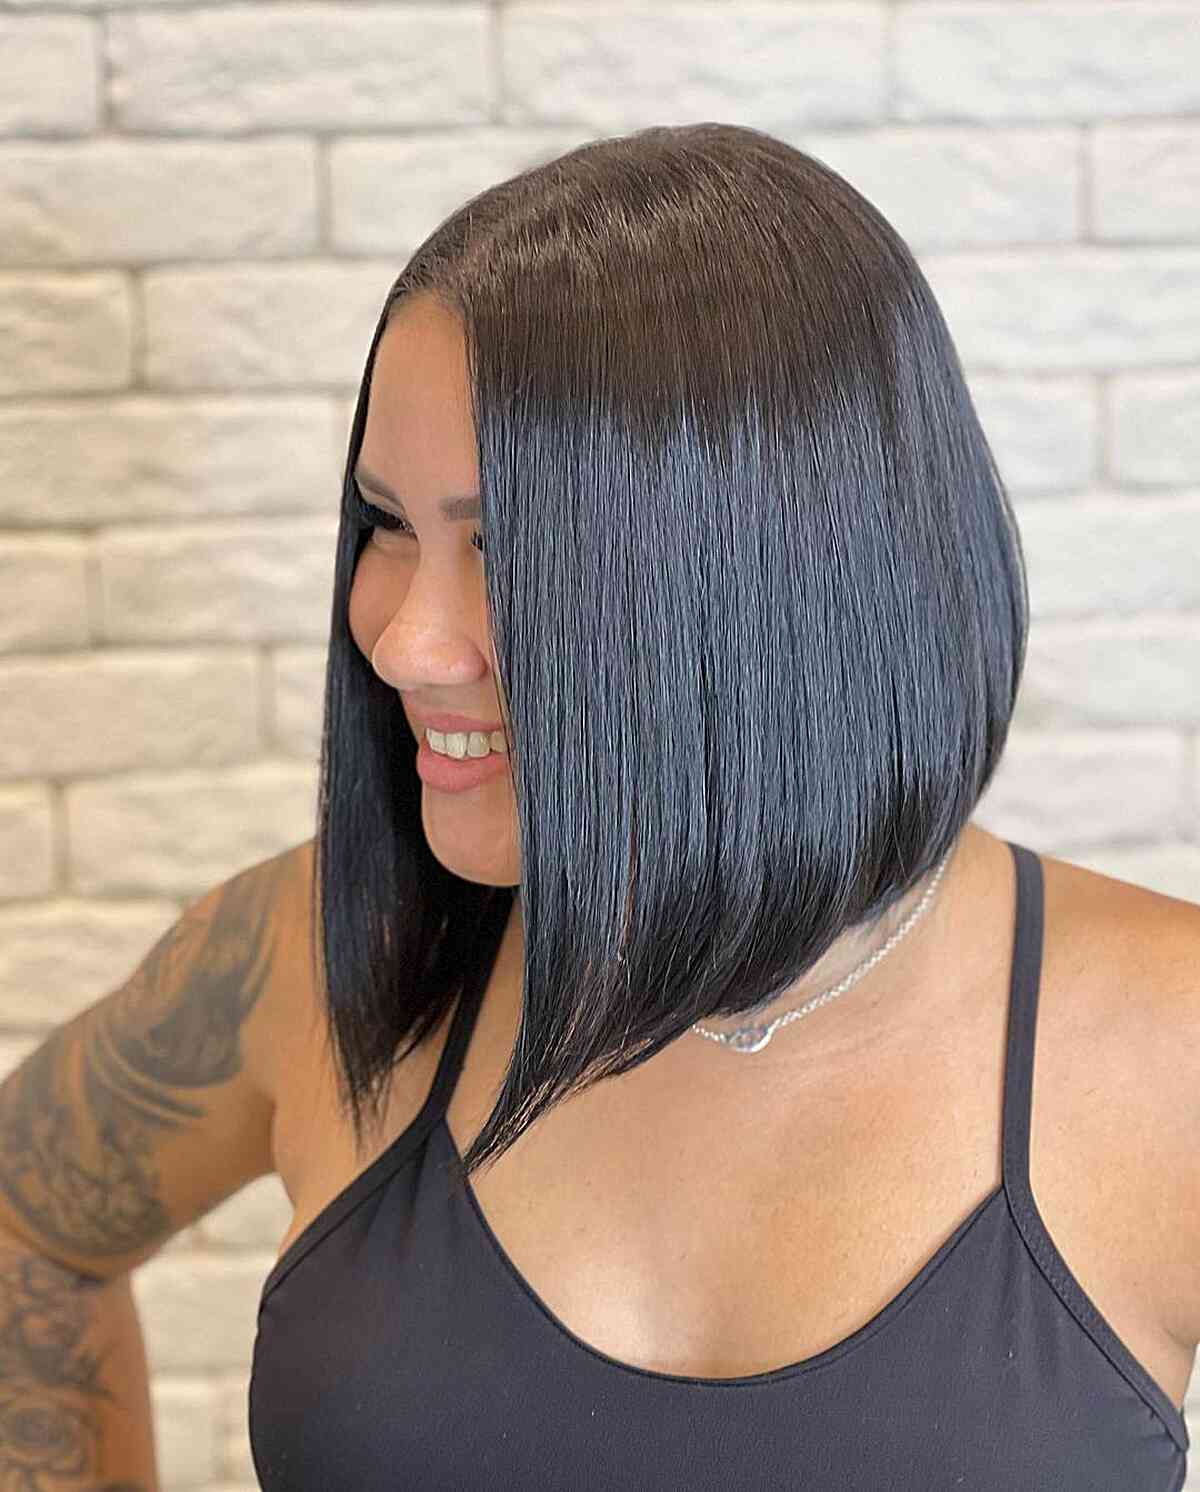 Penteado reto para mulheres com cabelos pretos